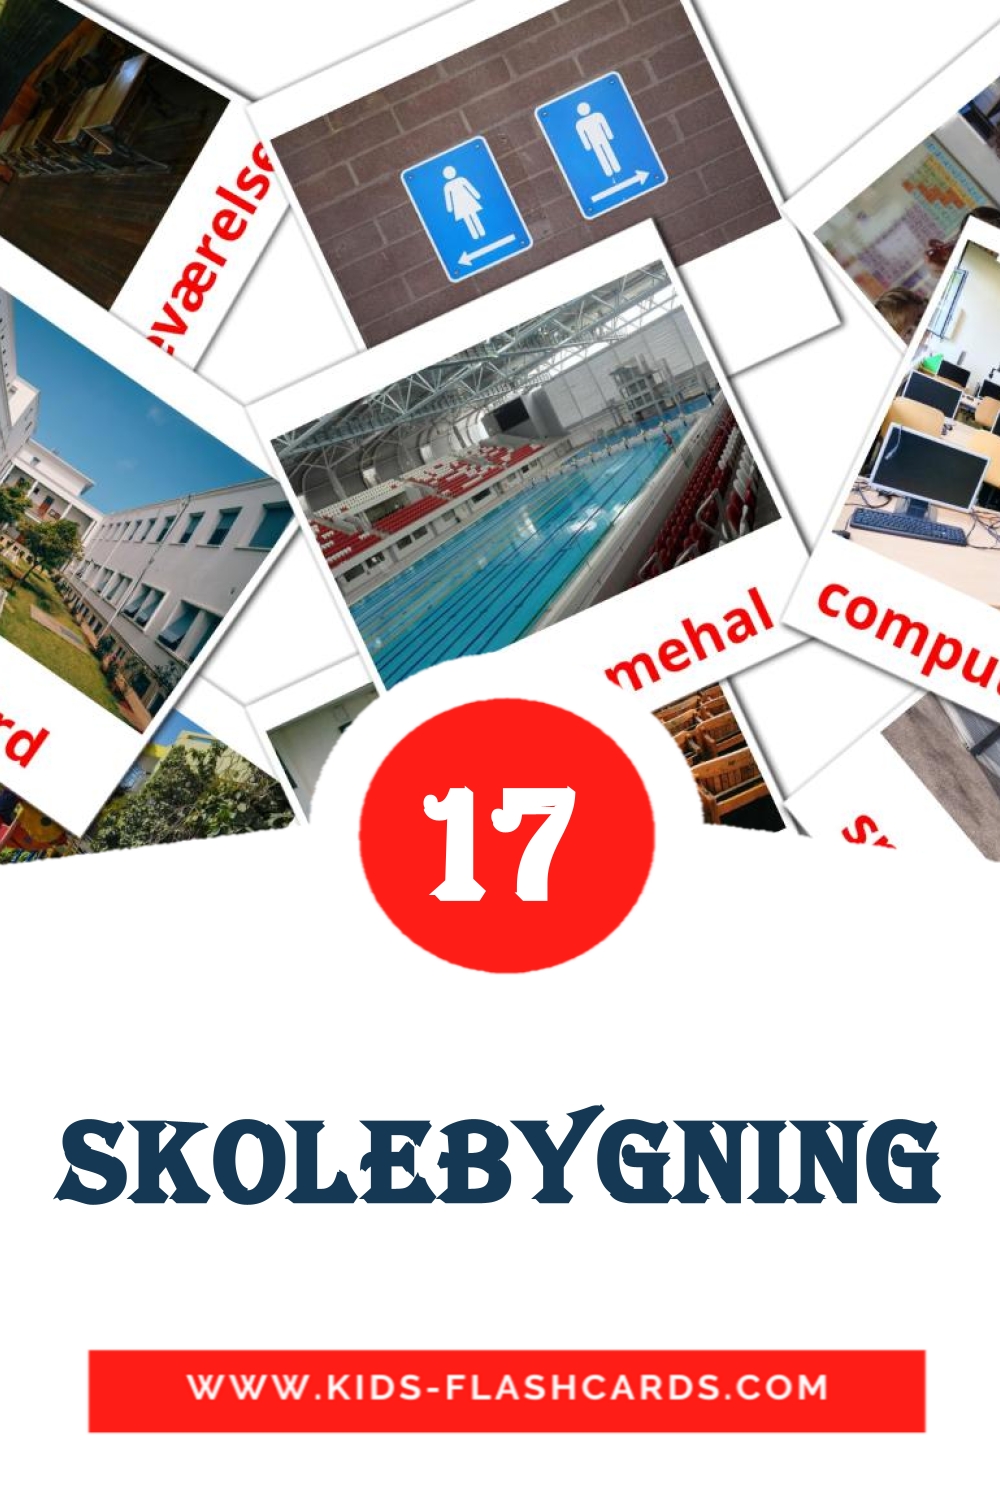 Skolebygning на датском для Детского Сада (17 карточек)